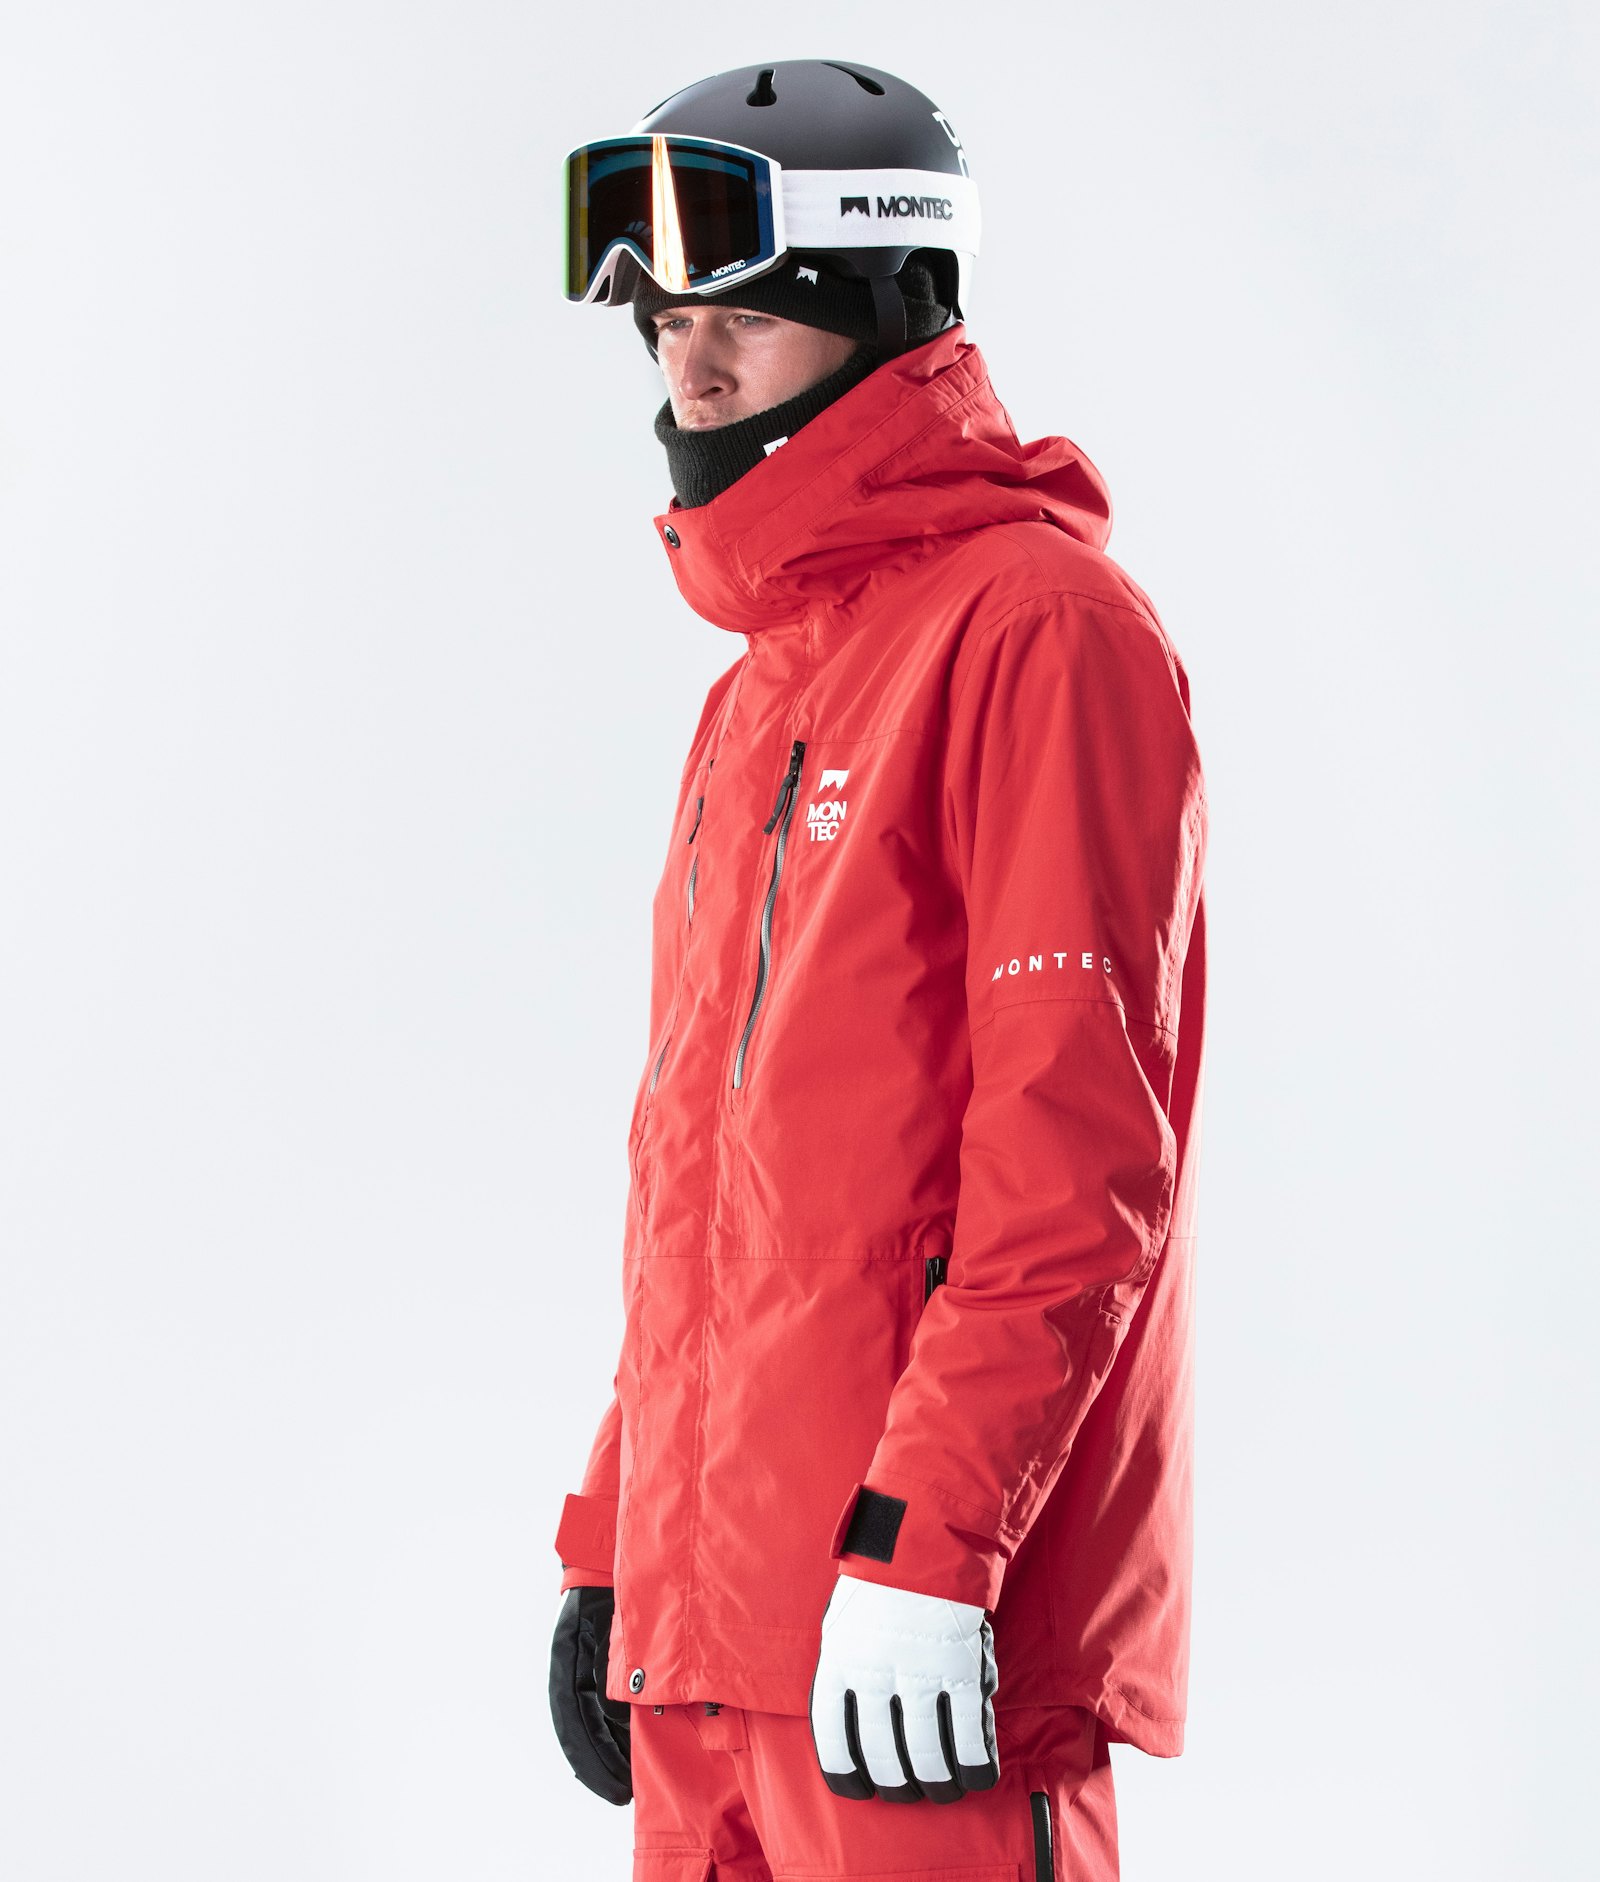 Fawk 2020 Veste de Ski Homme Red